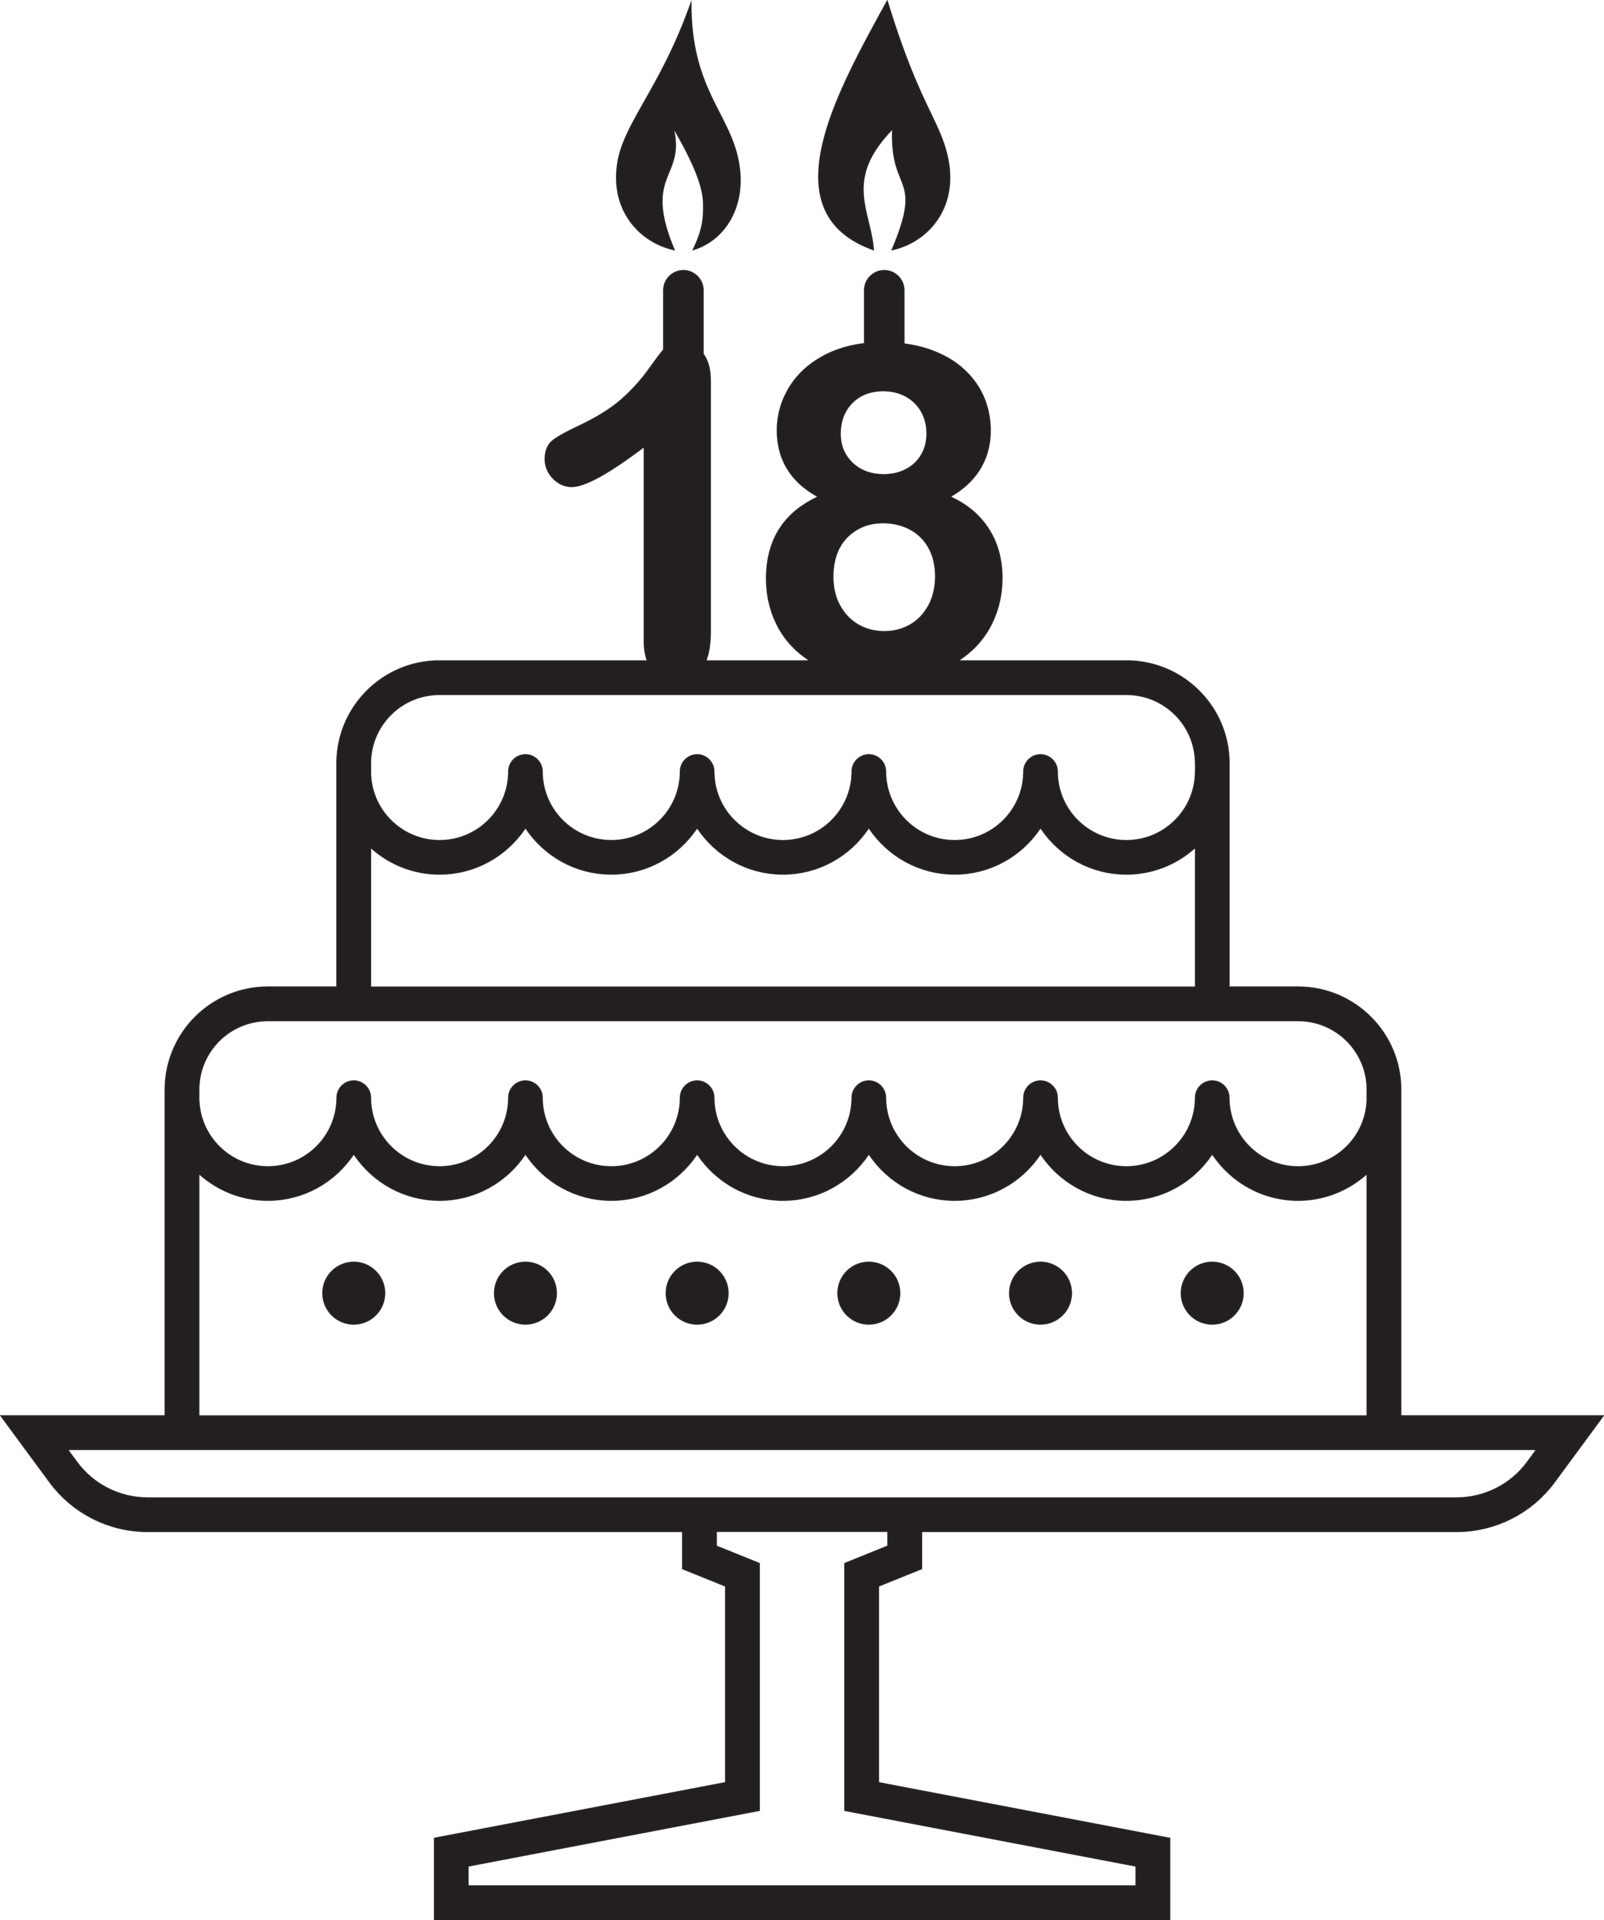 18 anos Abençoados Birthday Cake Topper, Topper Do Bolo De Aniversário,  Festa de Aniversário Decoração de Aniversário Original, Fontes Do Partido -  AliExpress